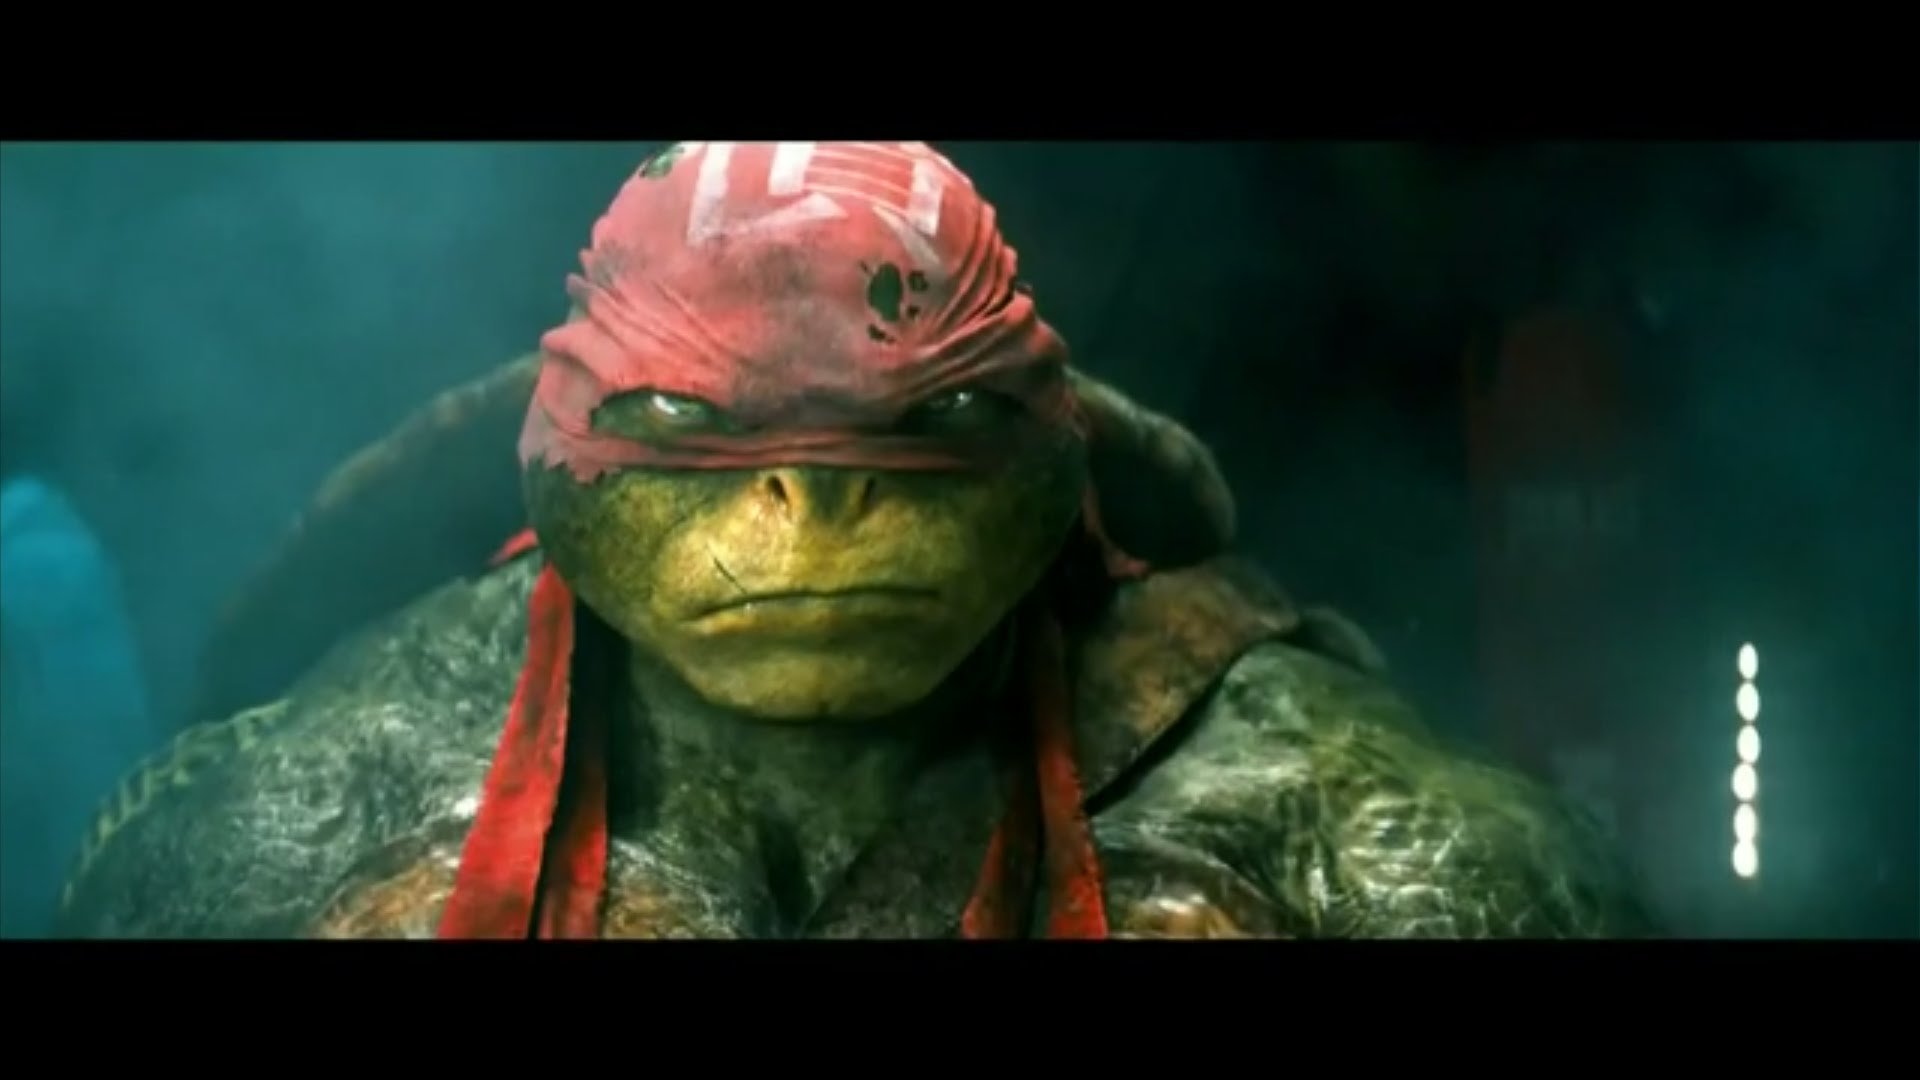 Download full hd Teenage Mutant Ninja Turtles (2014) TMNT movie PC background ID:234197 for free